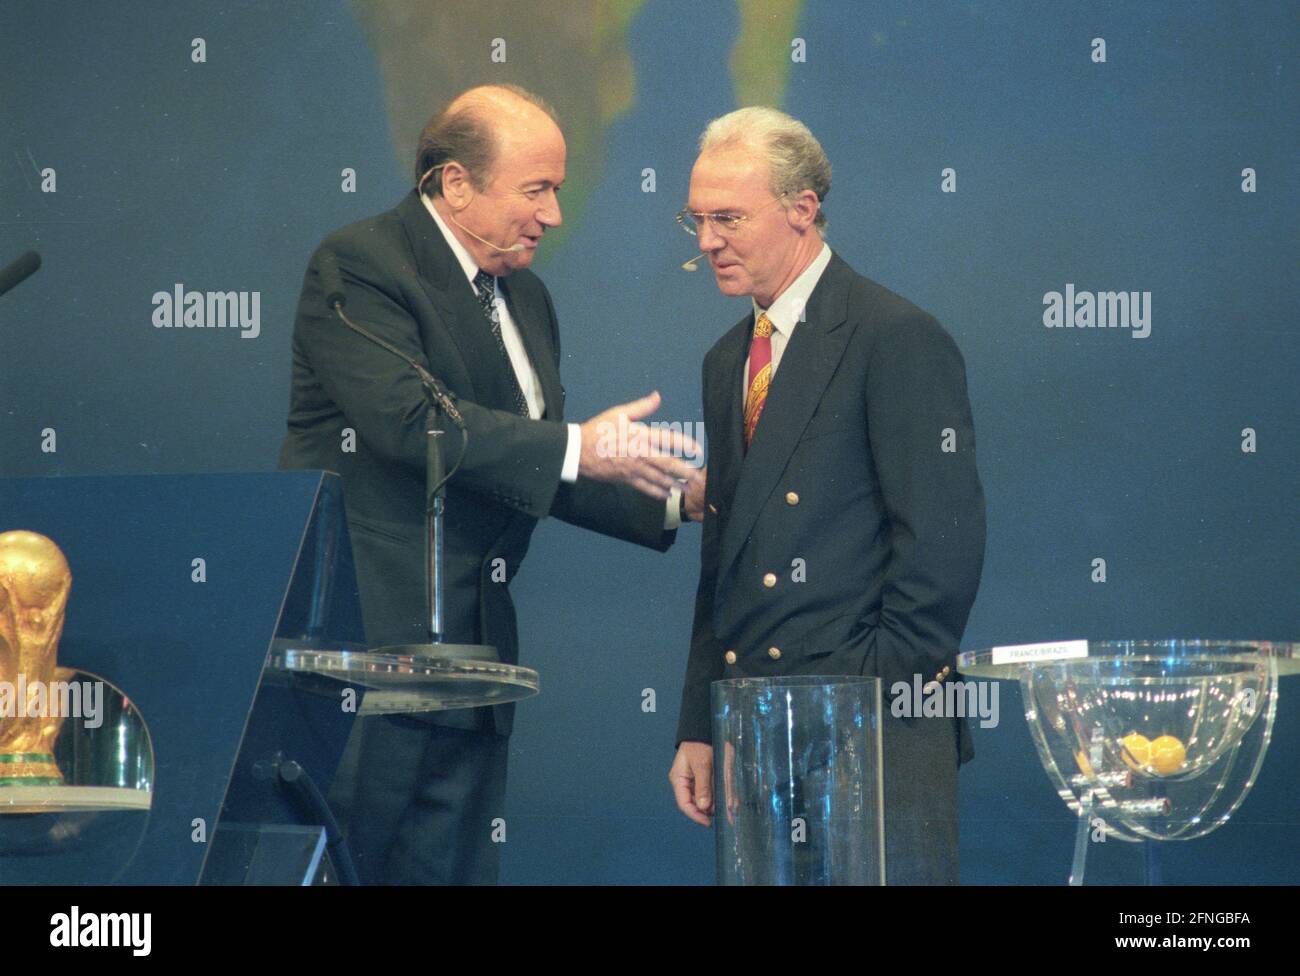 Tirage au sort pour la coupe du monde 1998 à Marseille 04.12.1998. Le président de la FIFA, Sepp Blatter, et Franz Beckenbauer. [traduction automatique] Banque D'Images